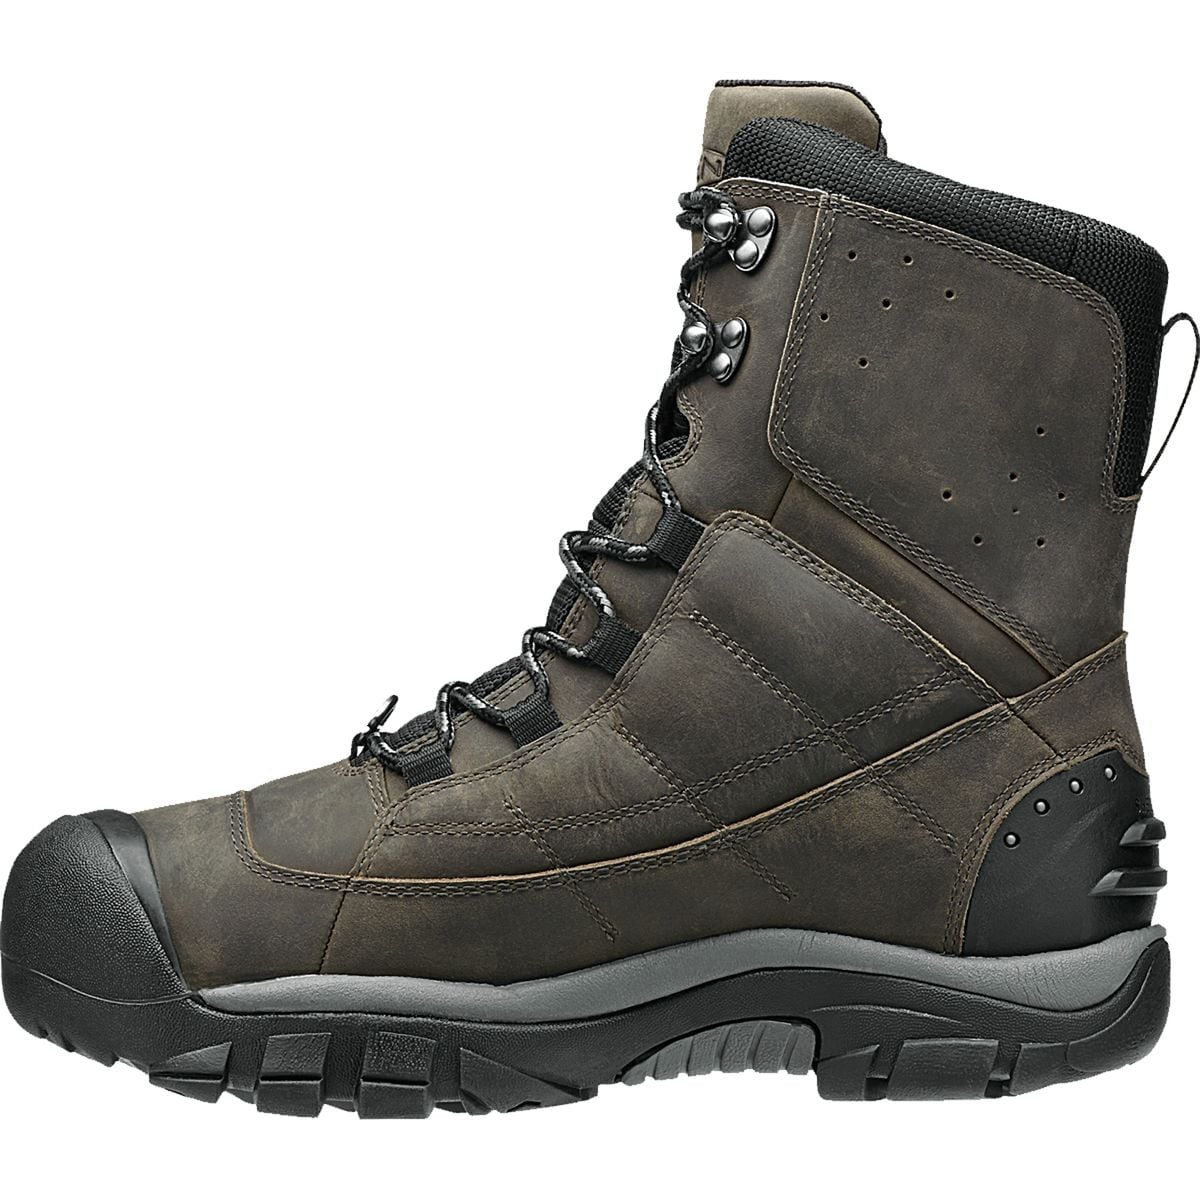 KEEN Summit County III Boot - Men's | eBay